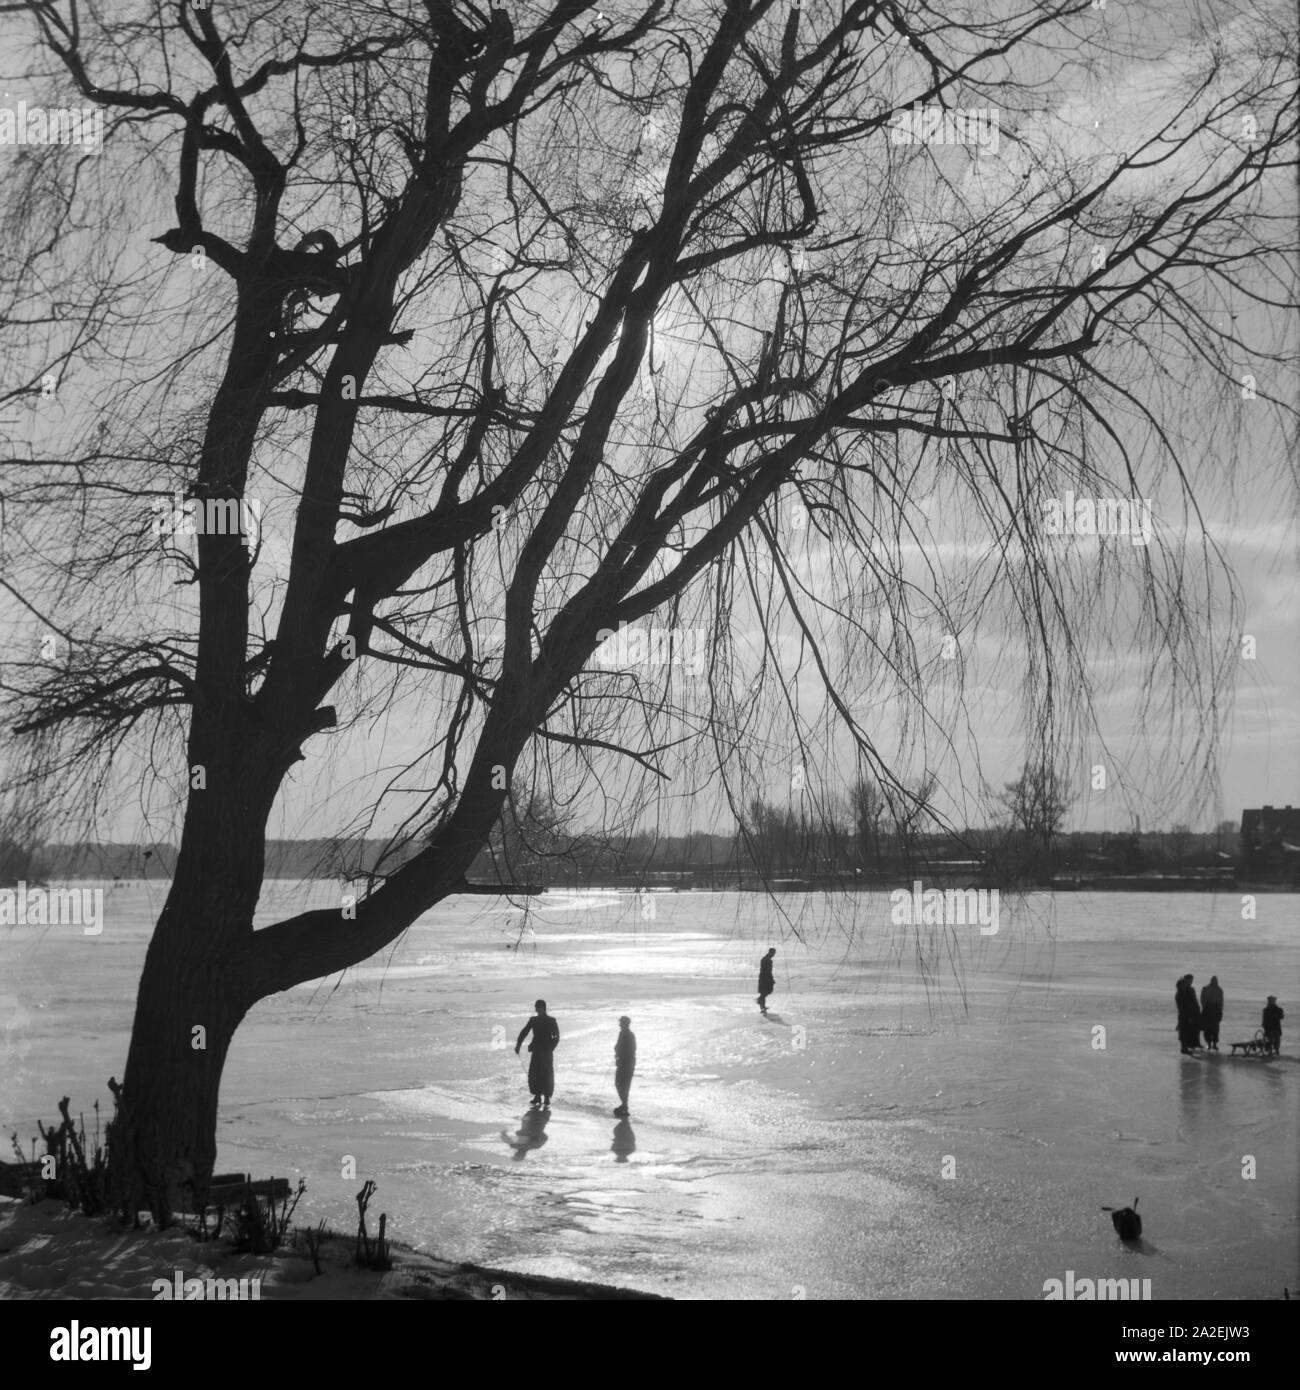 Menschen fahren Schlittschuh in einem zugefrorenen Sehen, Deutschland 1930er Jahre. Leute Eislaufen auf einem zugefrorenen See, Deutschland 1930. Stockfoto